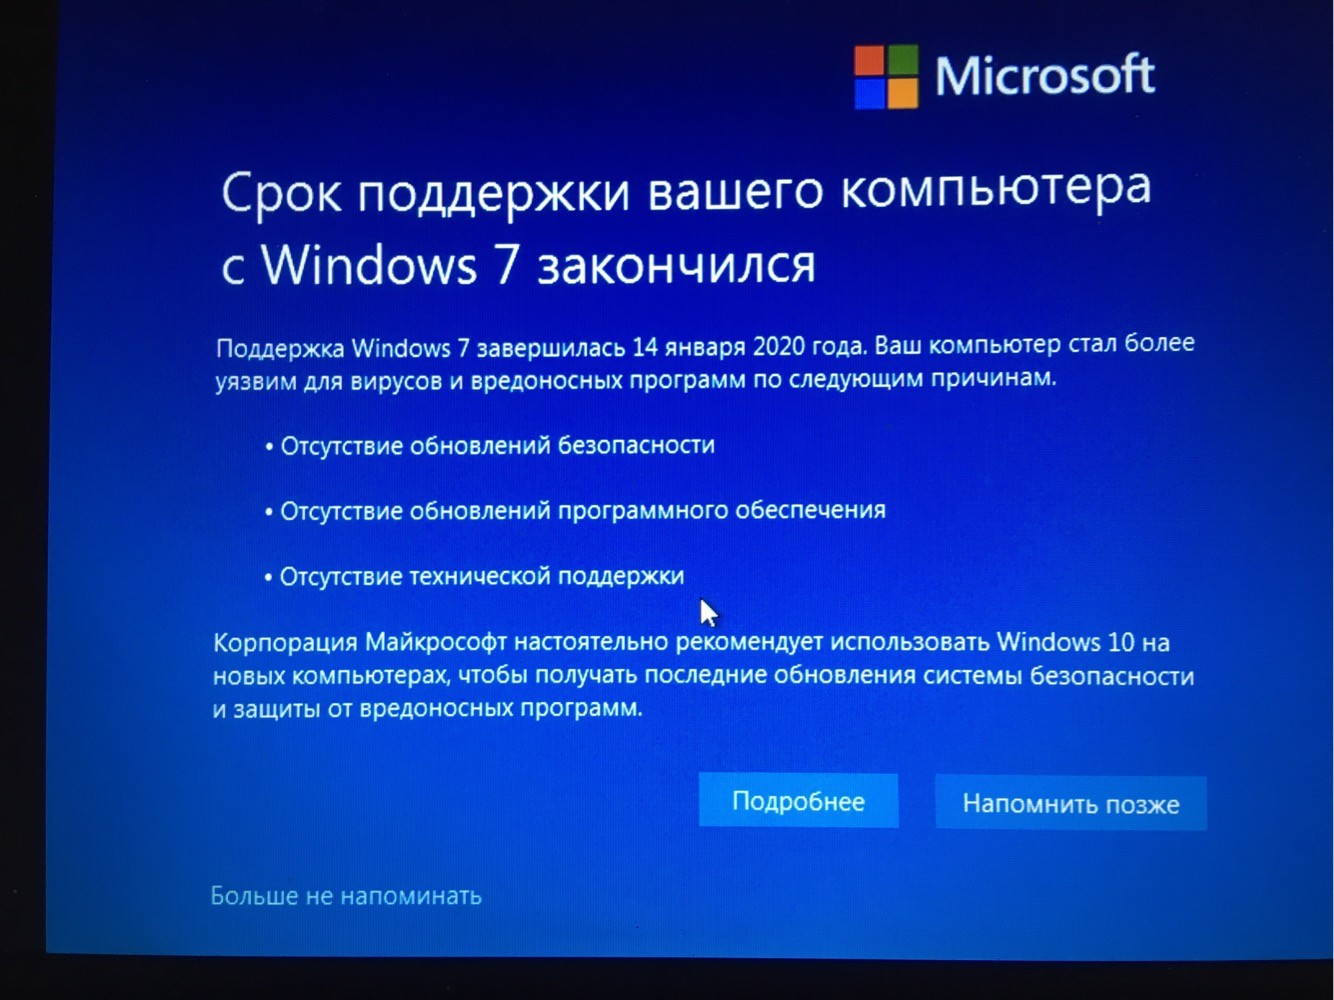 Последние версии операционной системы. Операционная система Microsoft Windows 11. Прекращена поддержка Windows 7. Поддержка Windows 10. Обновление операционной системы.